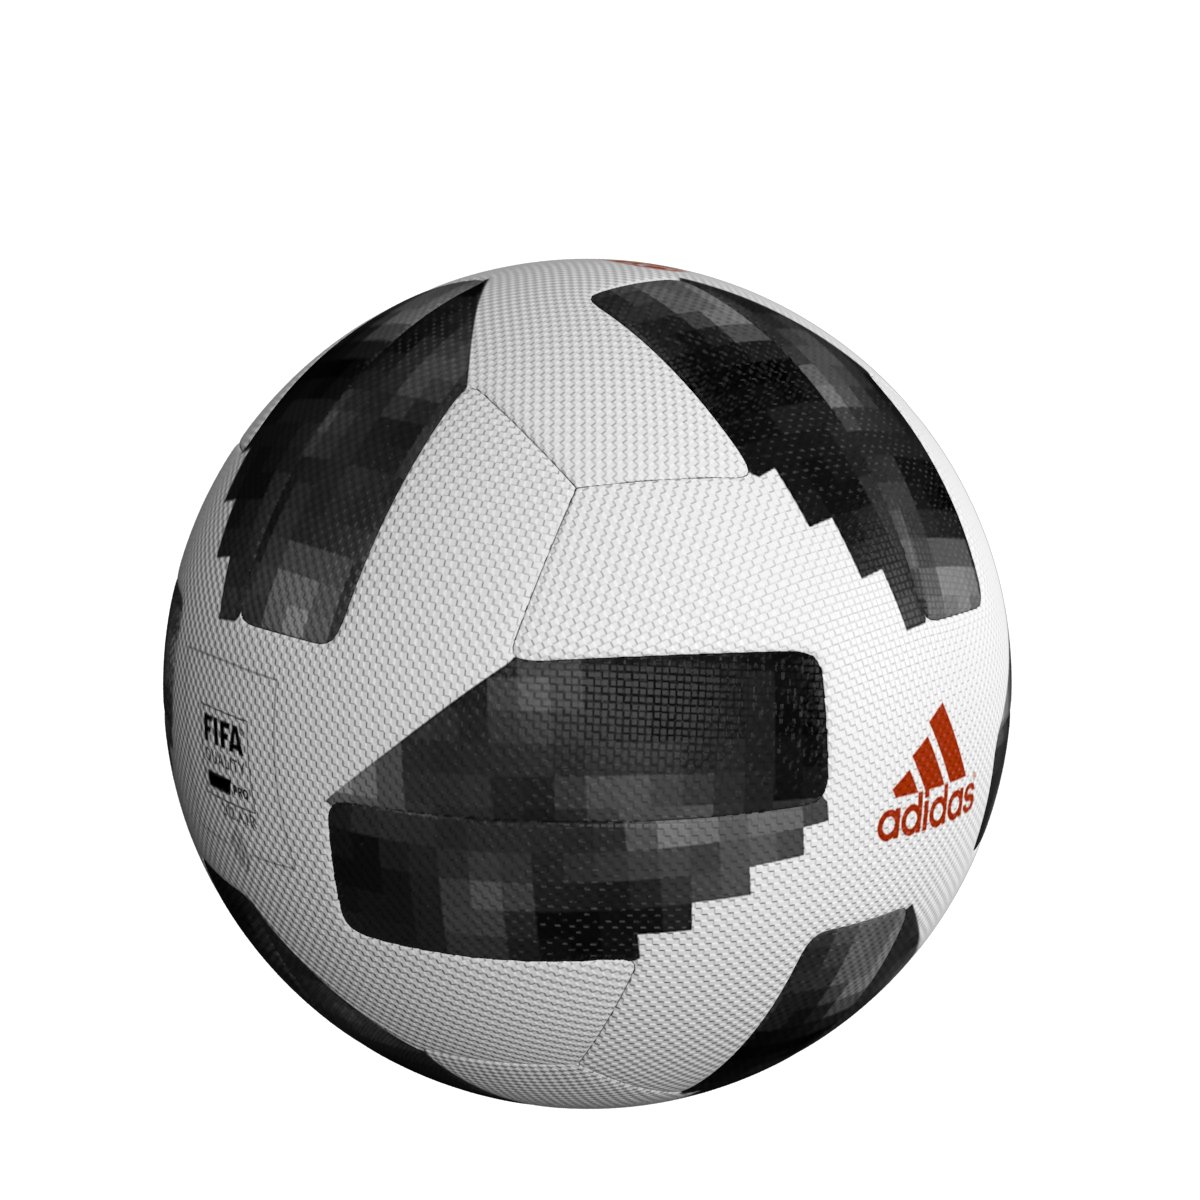 adidas telstar 18 soccer ball